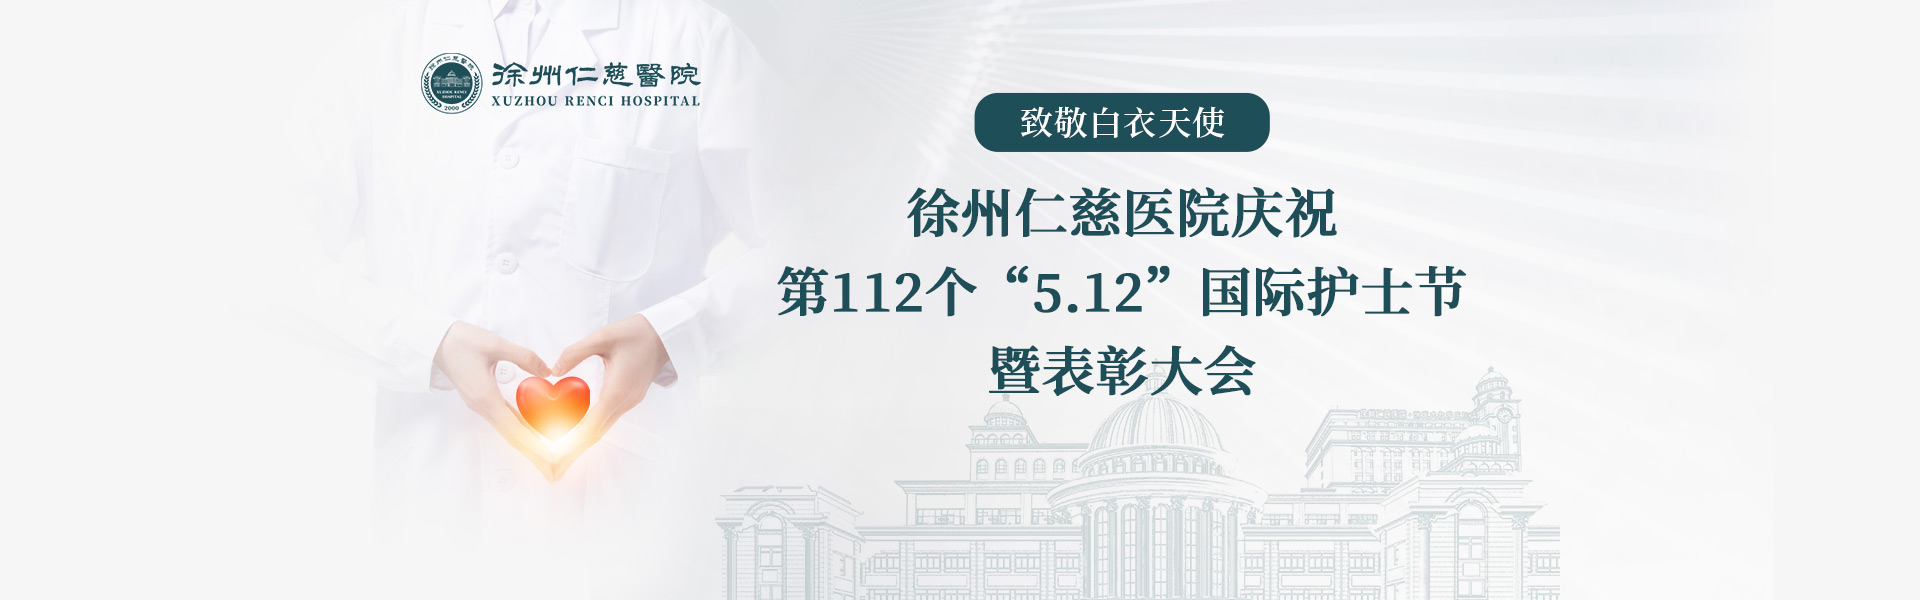 致敬白衣天使丨徐州仁慈医院庆祝第112个“5.12”国际护士节暨表彰大会